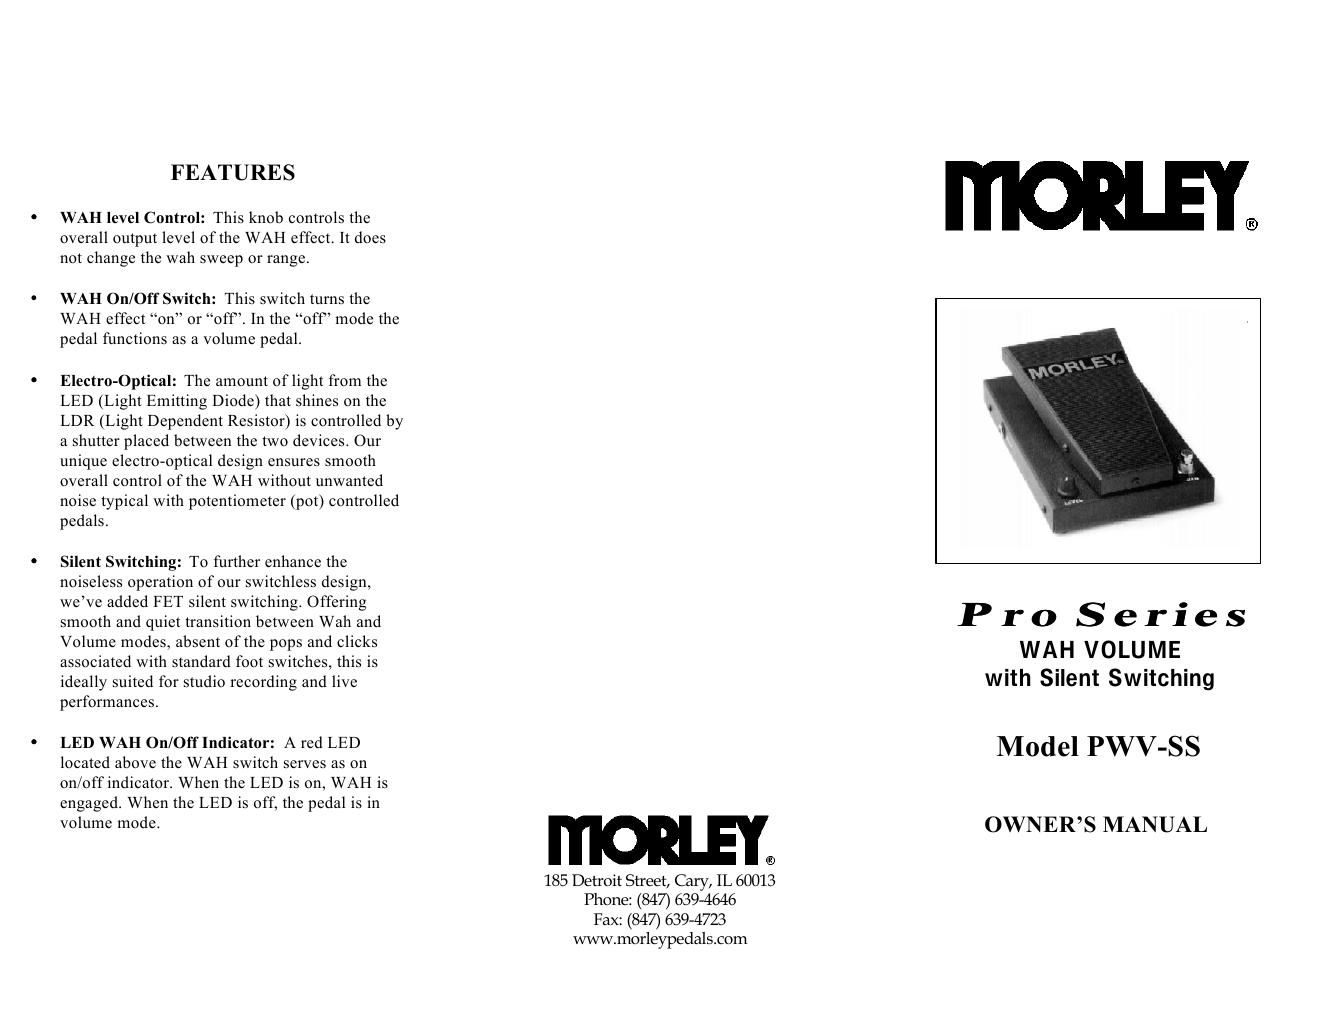 morley pwv ss pro series wah volume silent switching